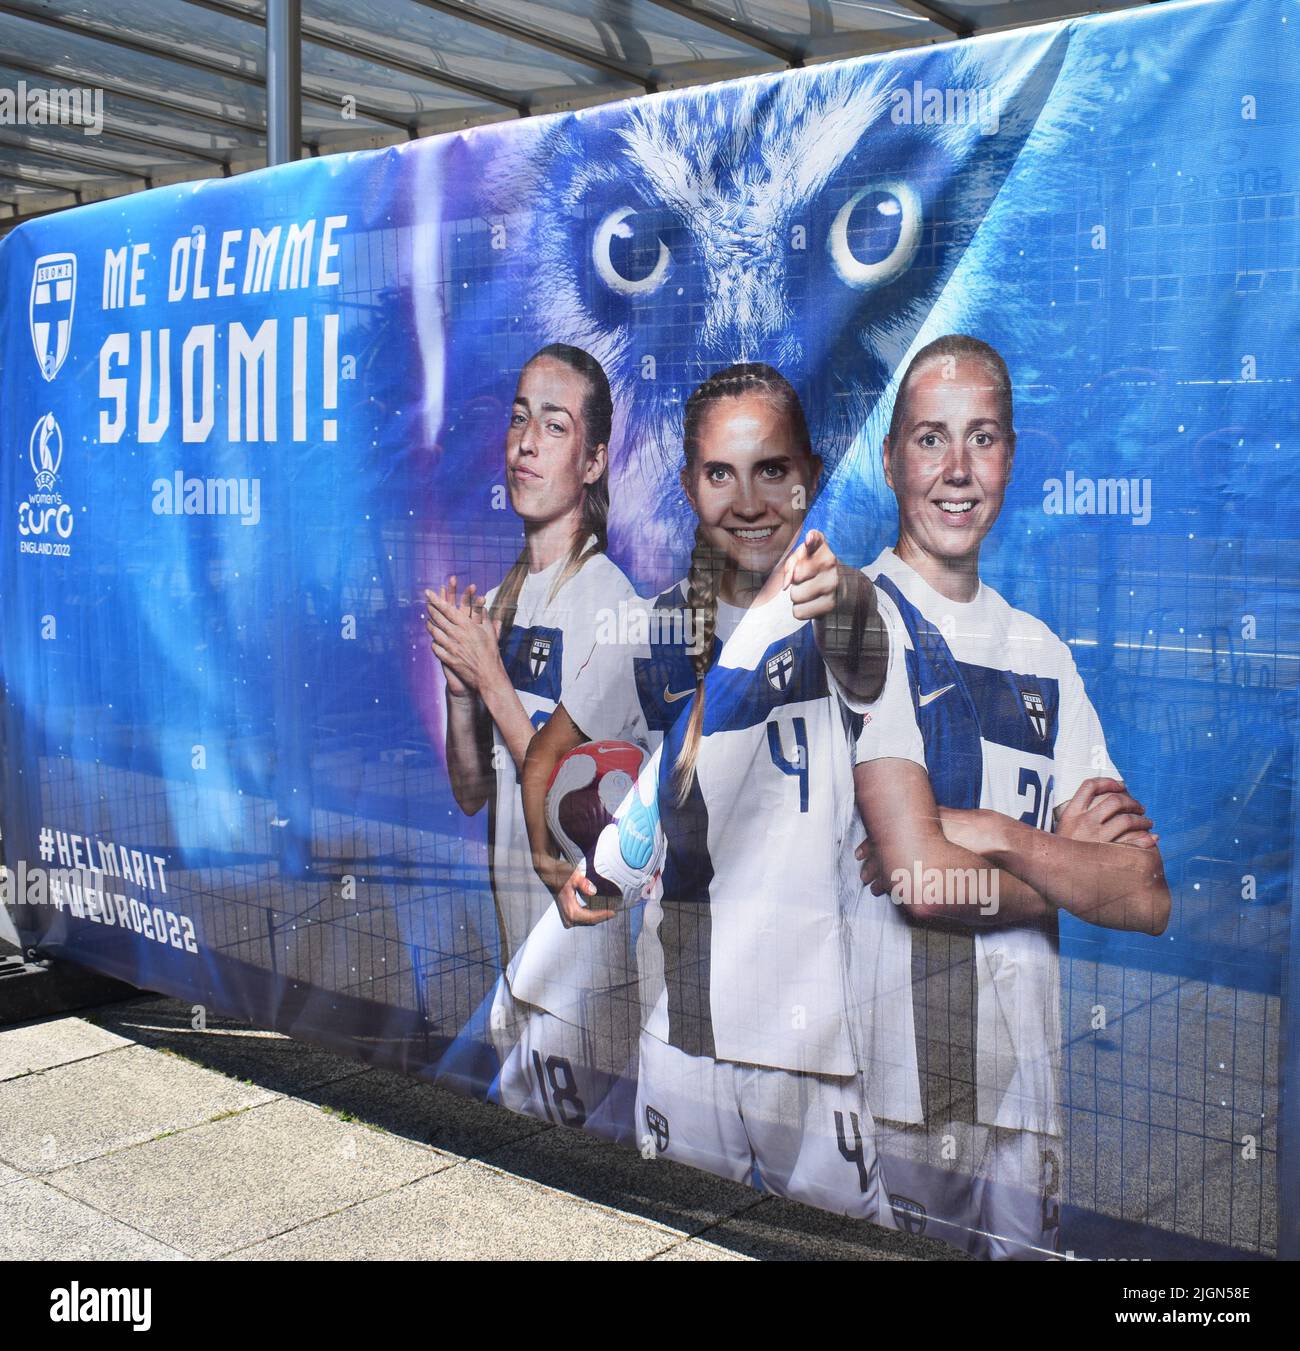 Immagini della squadra finlandese alla Fan zone in Station Square, Milton Keynes alla UEFA Women's Euro 2022. Foto Stock